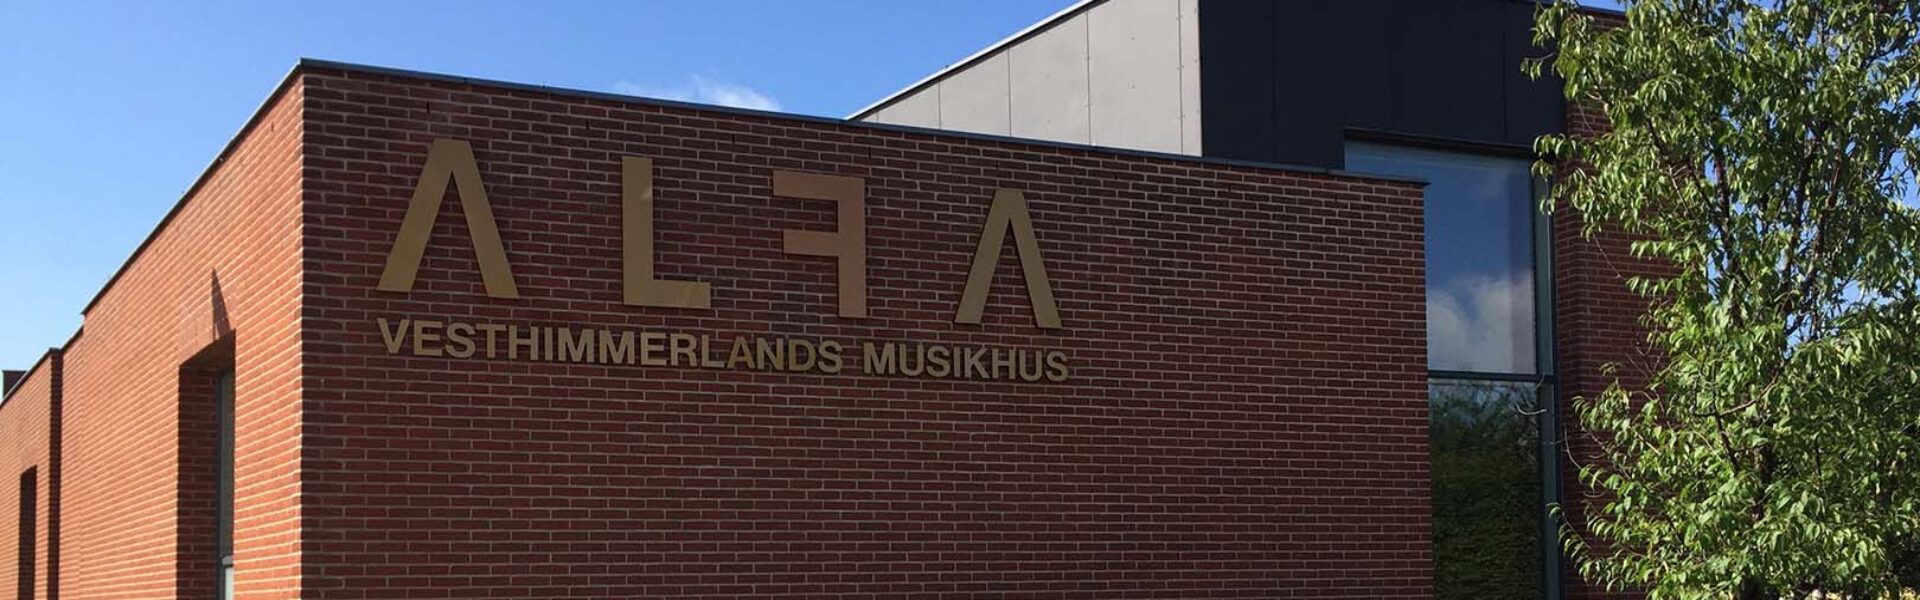 Vesthimmerlands Musikhus ALFA set udefra.